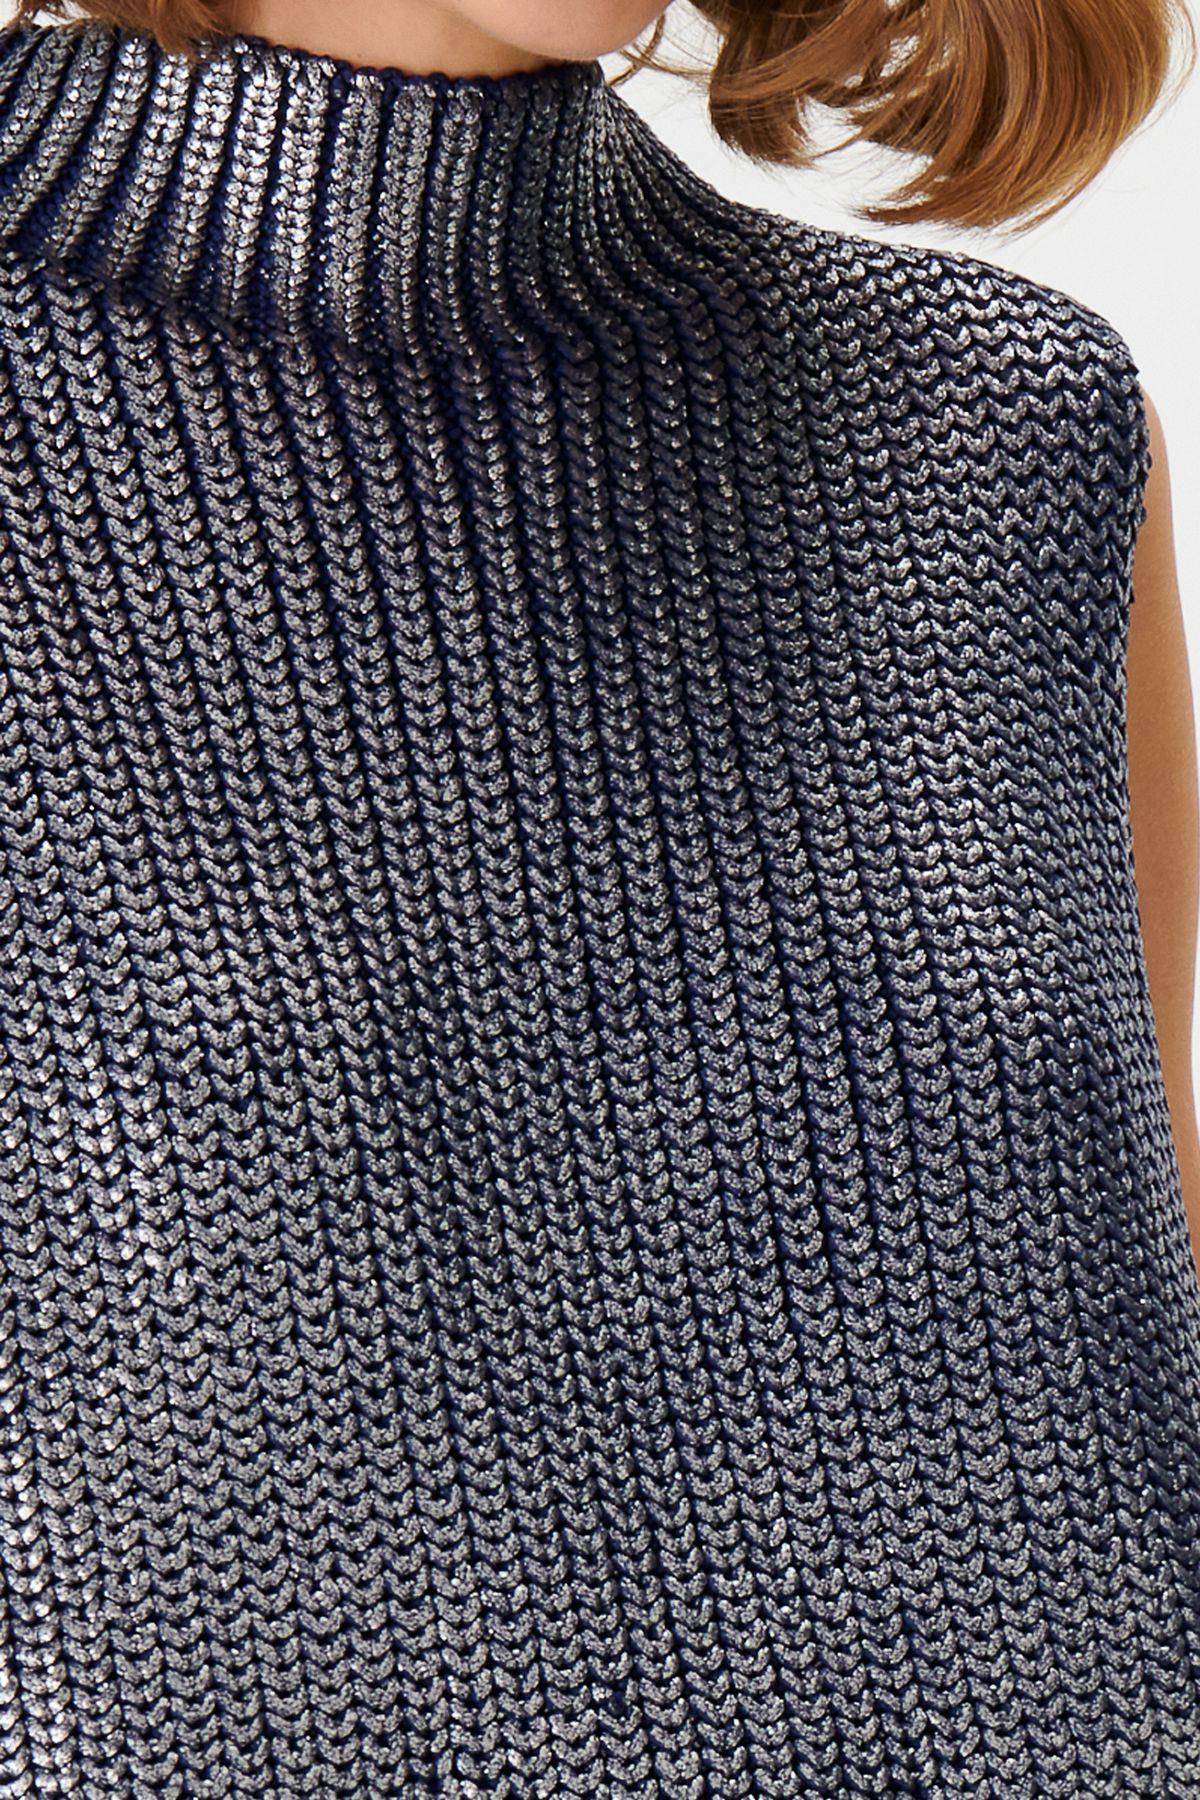 Glitter Printed Navy Blue Knitwear Sweater